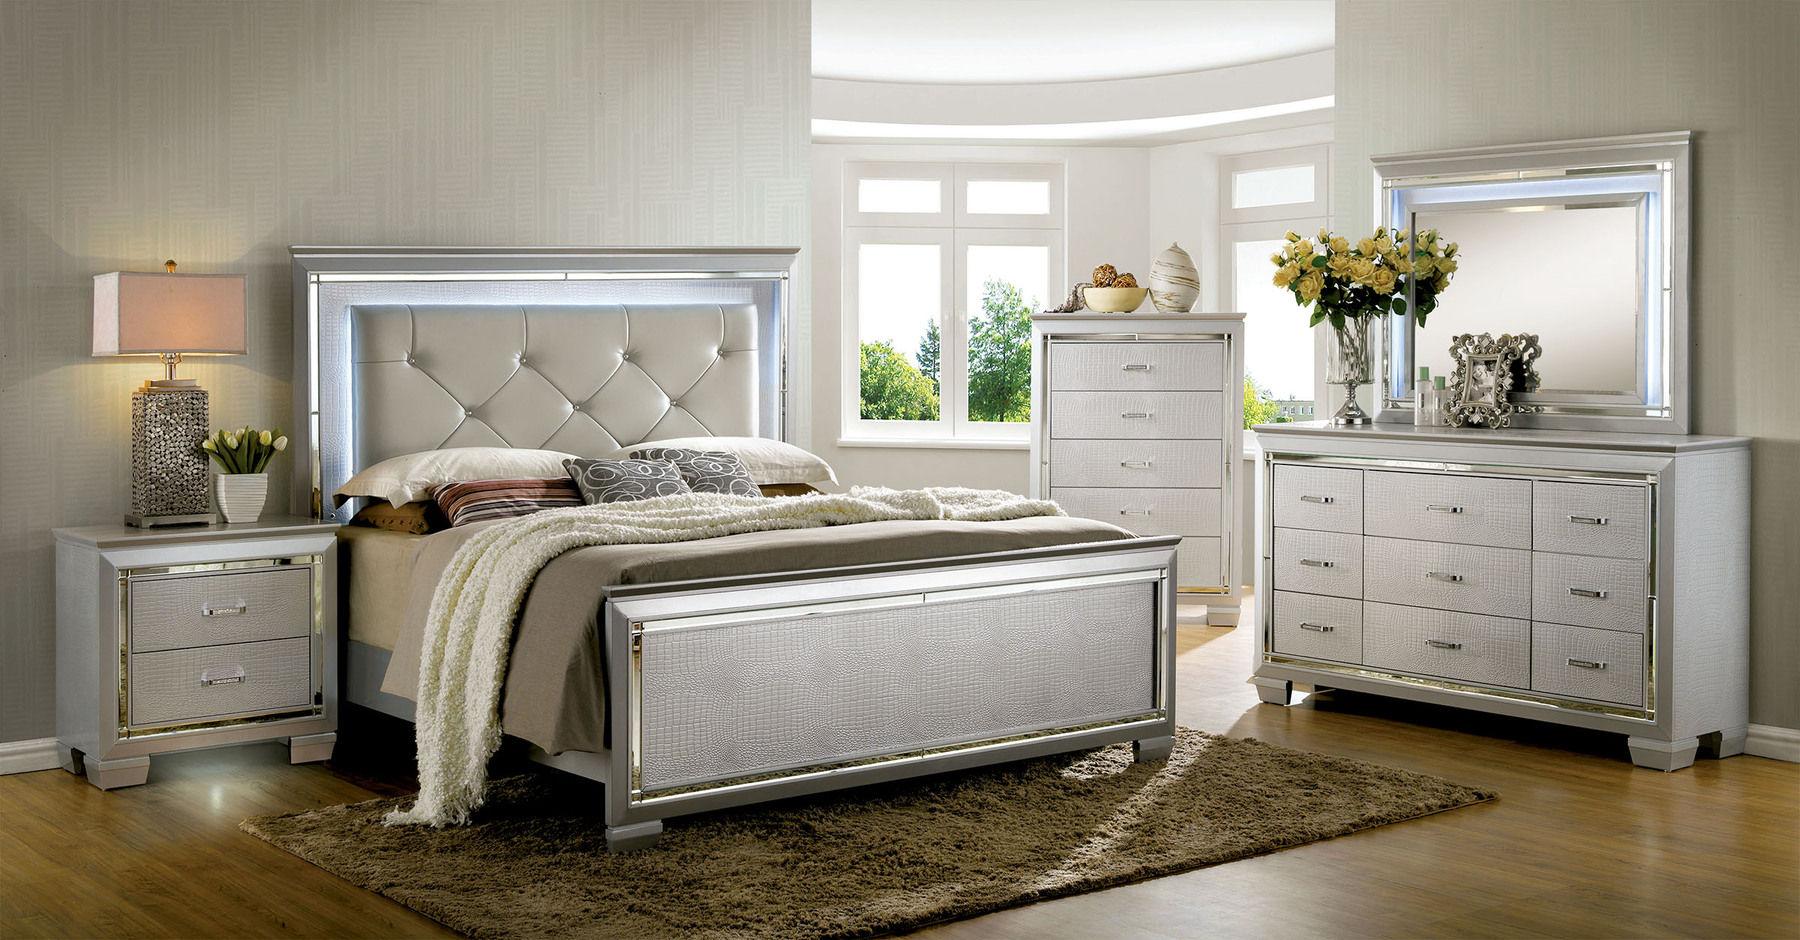 

    
Contemporary Silver Solid Wood Queen Bedroom Set 5pcs Furniture of America CM7979SV-Q Bellanova
